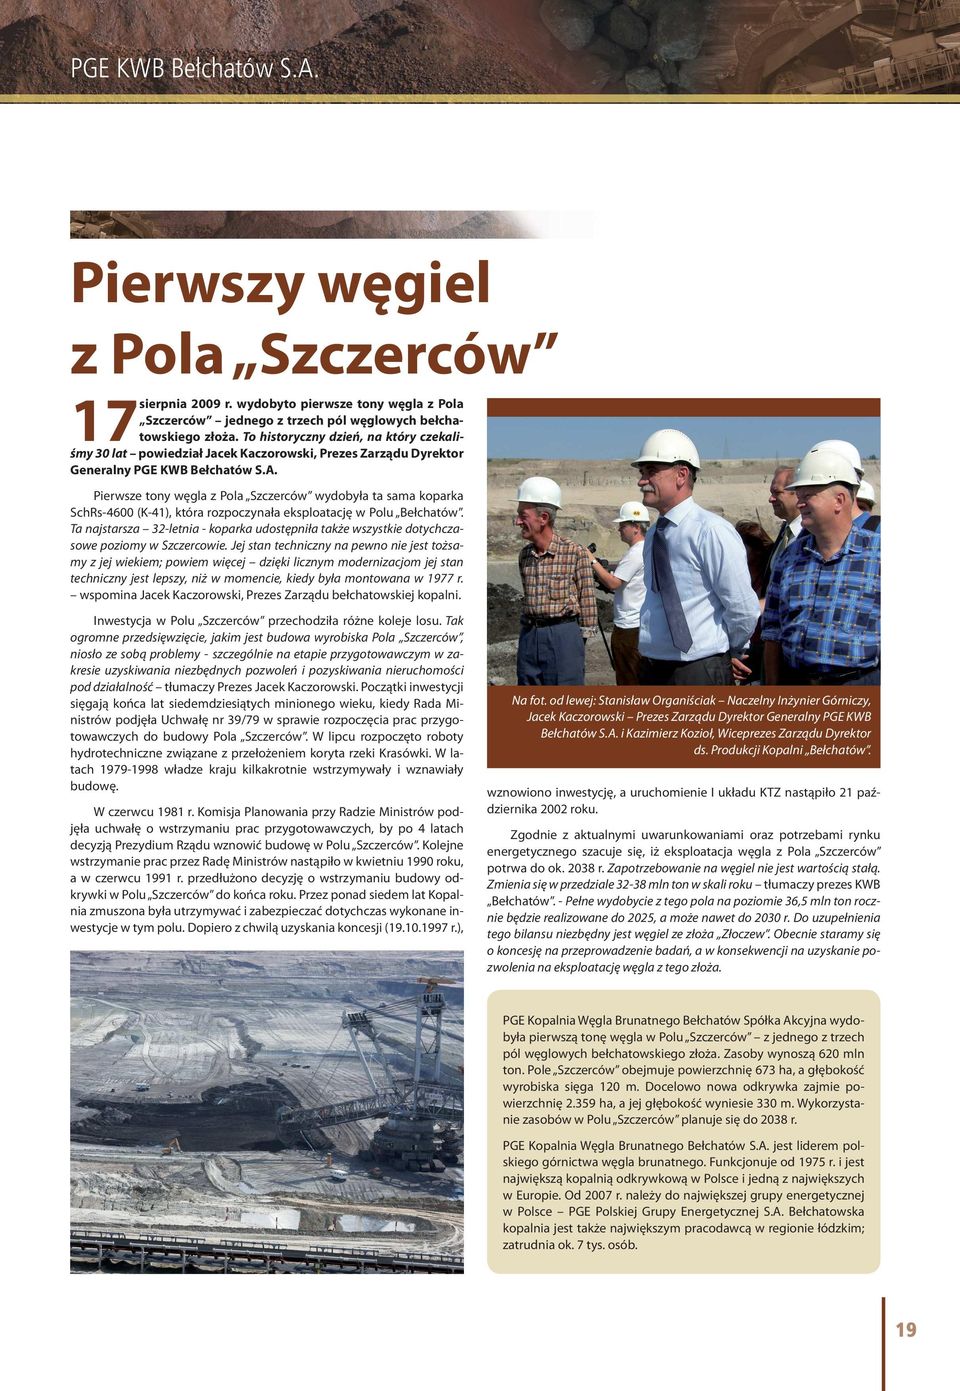 Pierwsze tony węgla z Pola Szczerców wydobyła ta sama koparka SchRs-4600 (K-41), która rozpoczynała eksploatację w Polu Bełchatów.